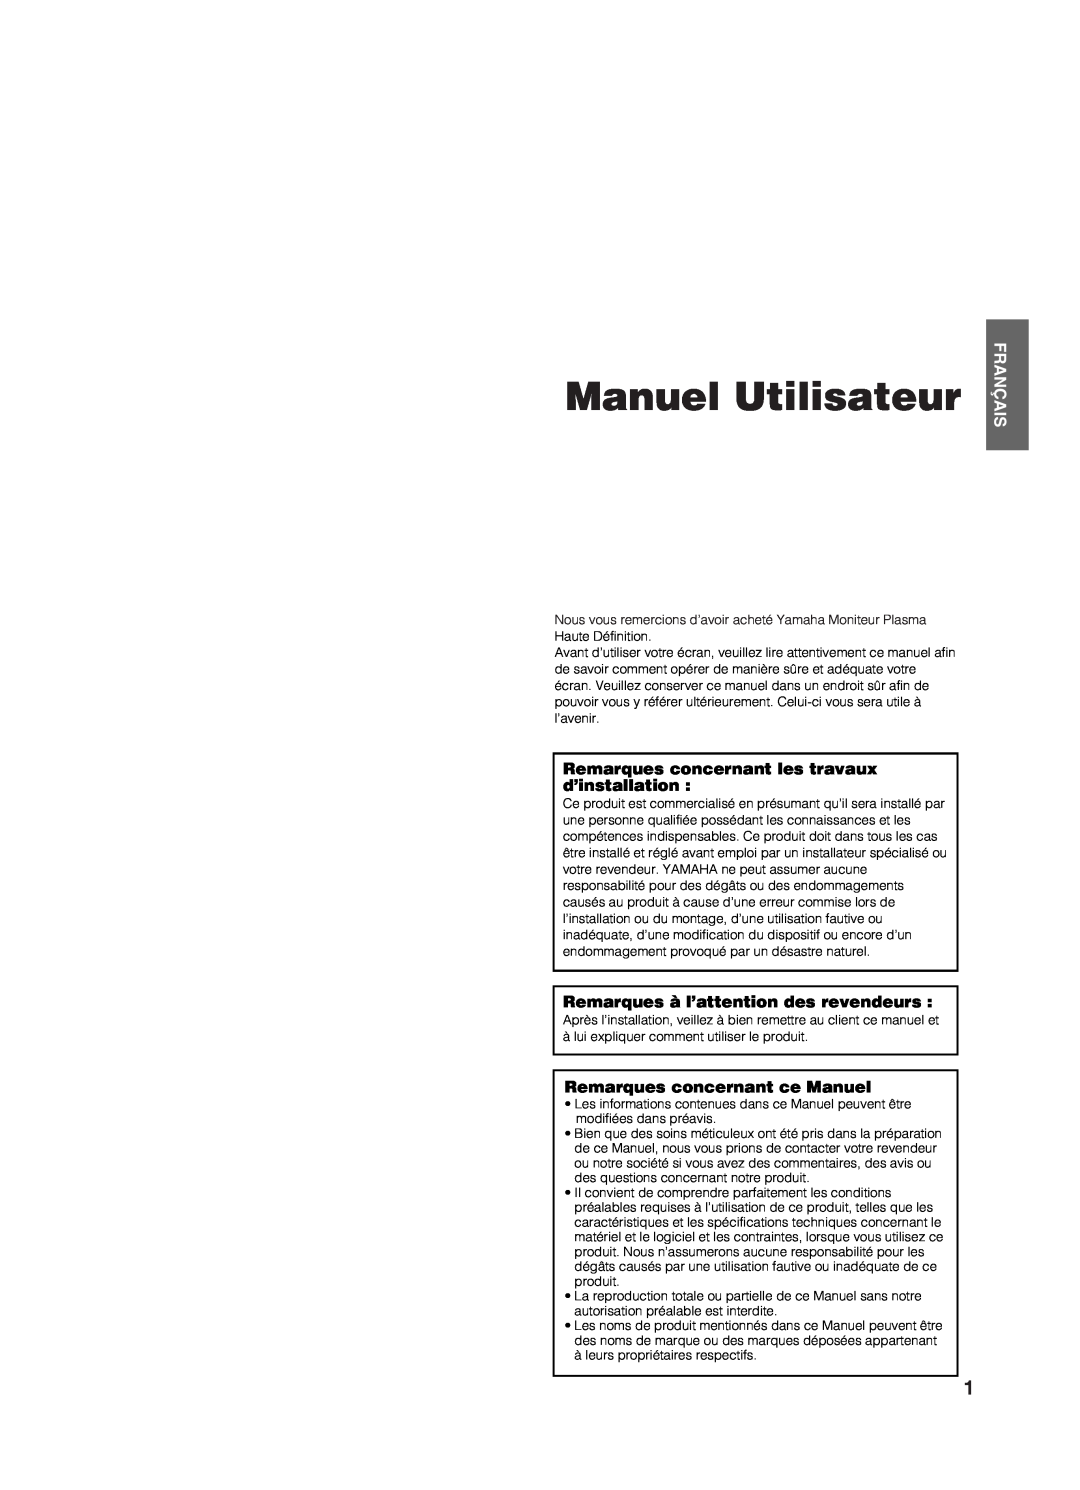 Yamaha PDM-4210E user manual Manuel Utilisateur, Français, Remarques concernant les travaux d’installation 